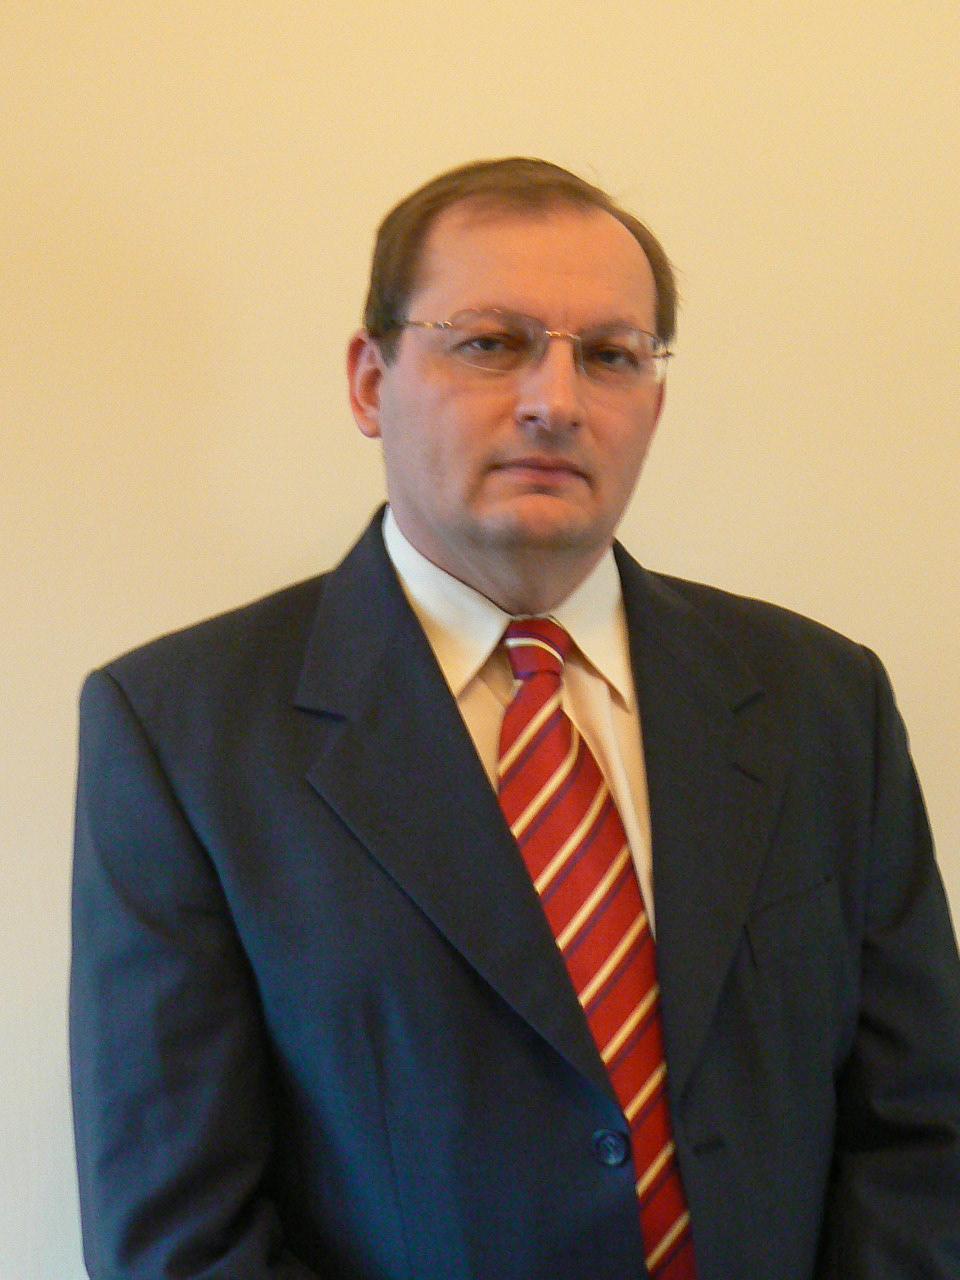 univ MKKE Posztgraduális Kar 1995, kandidátus (CSc) Magyar Tudományos Akadémia Egyetemi közéleti tevékenységek (testületi tagságok, vezetői megbizatások): 1994-1995 tanszékvezető-helyettes 2016 -